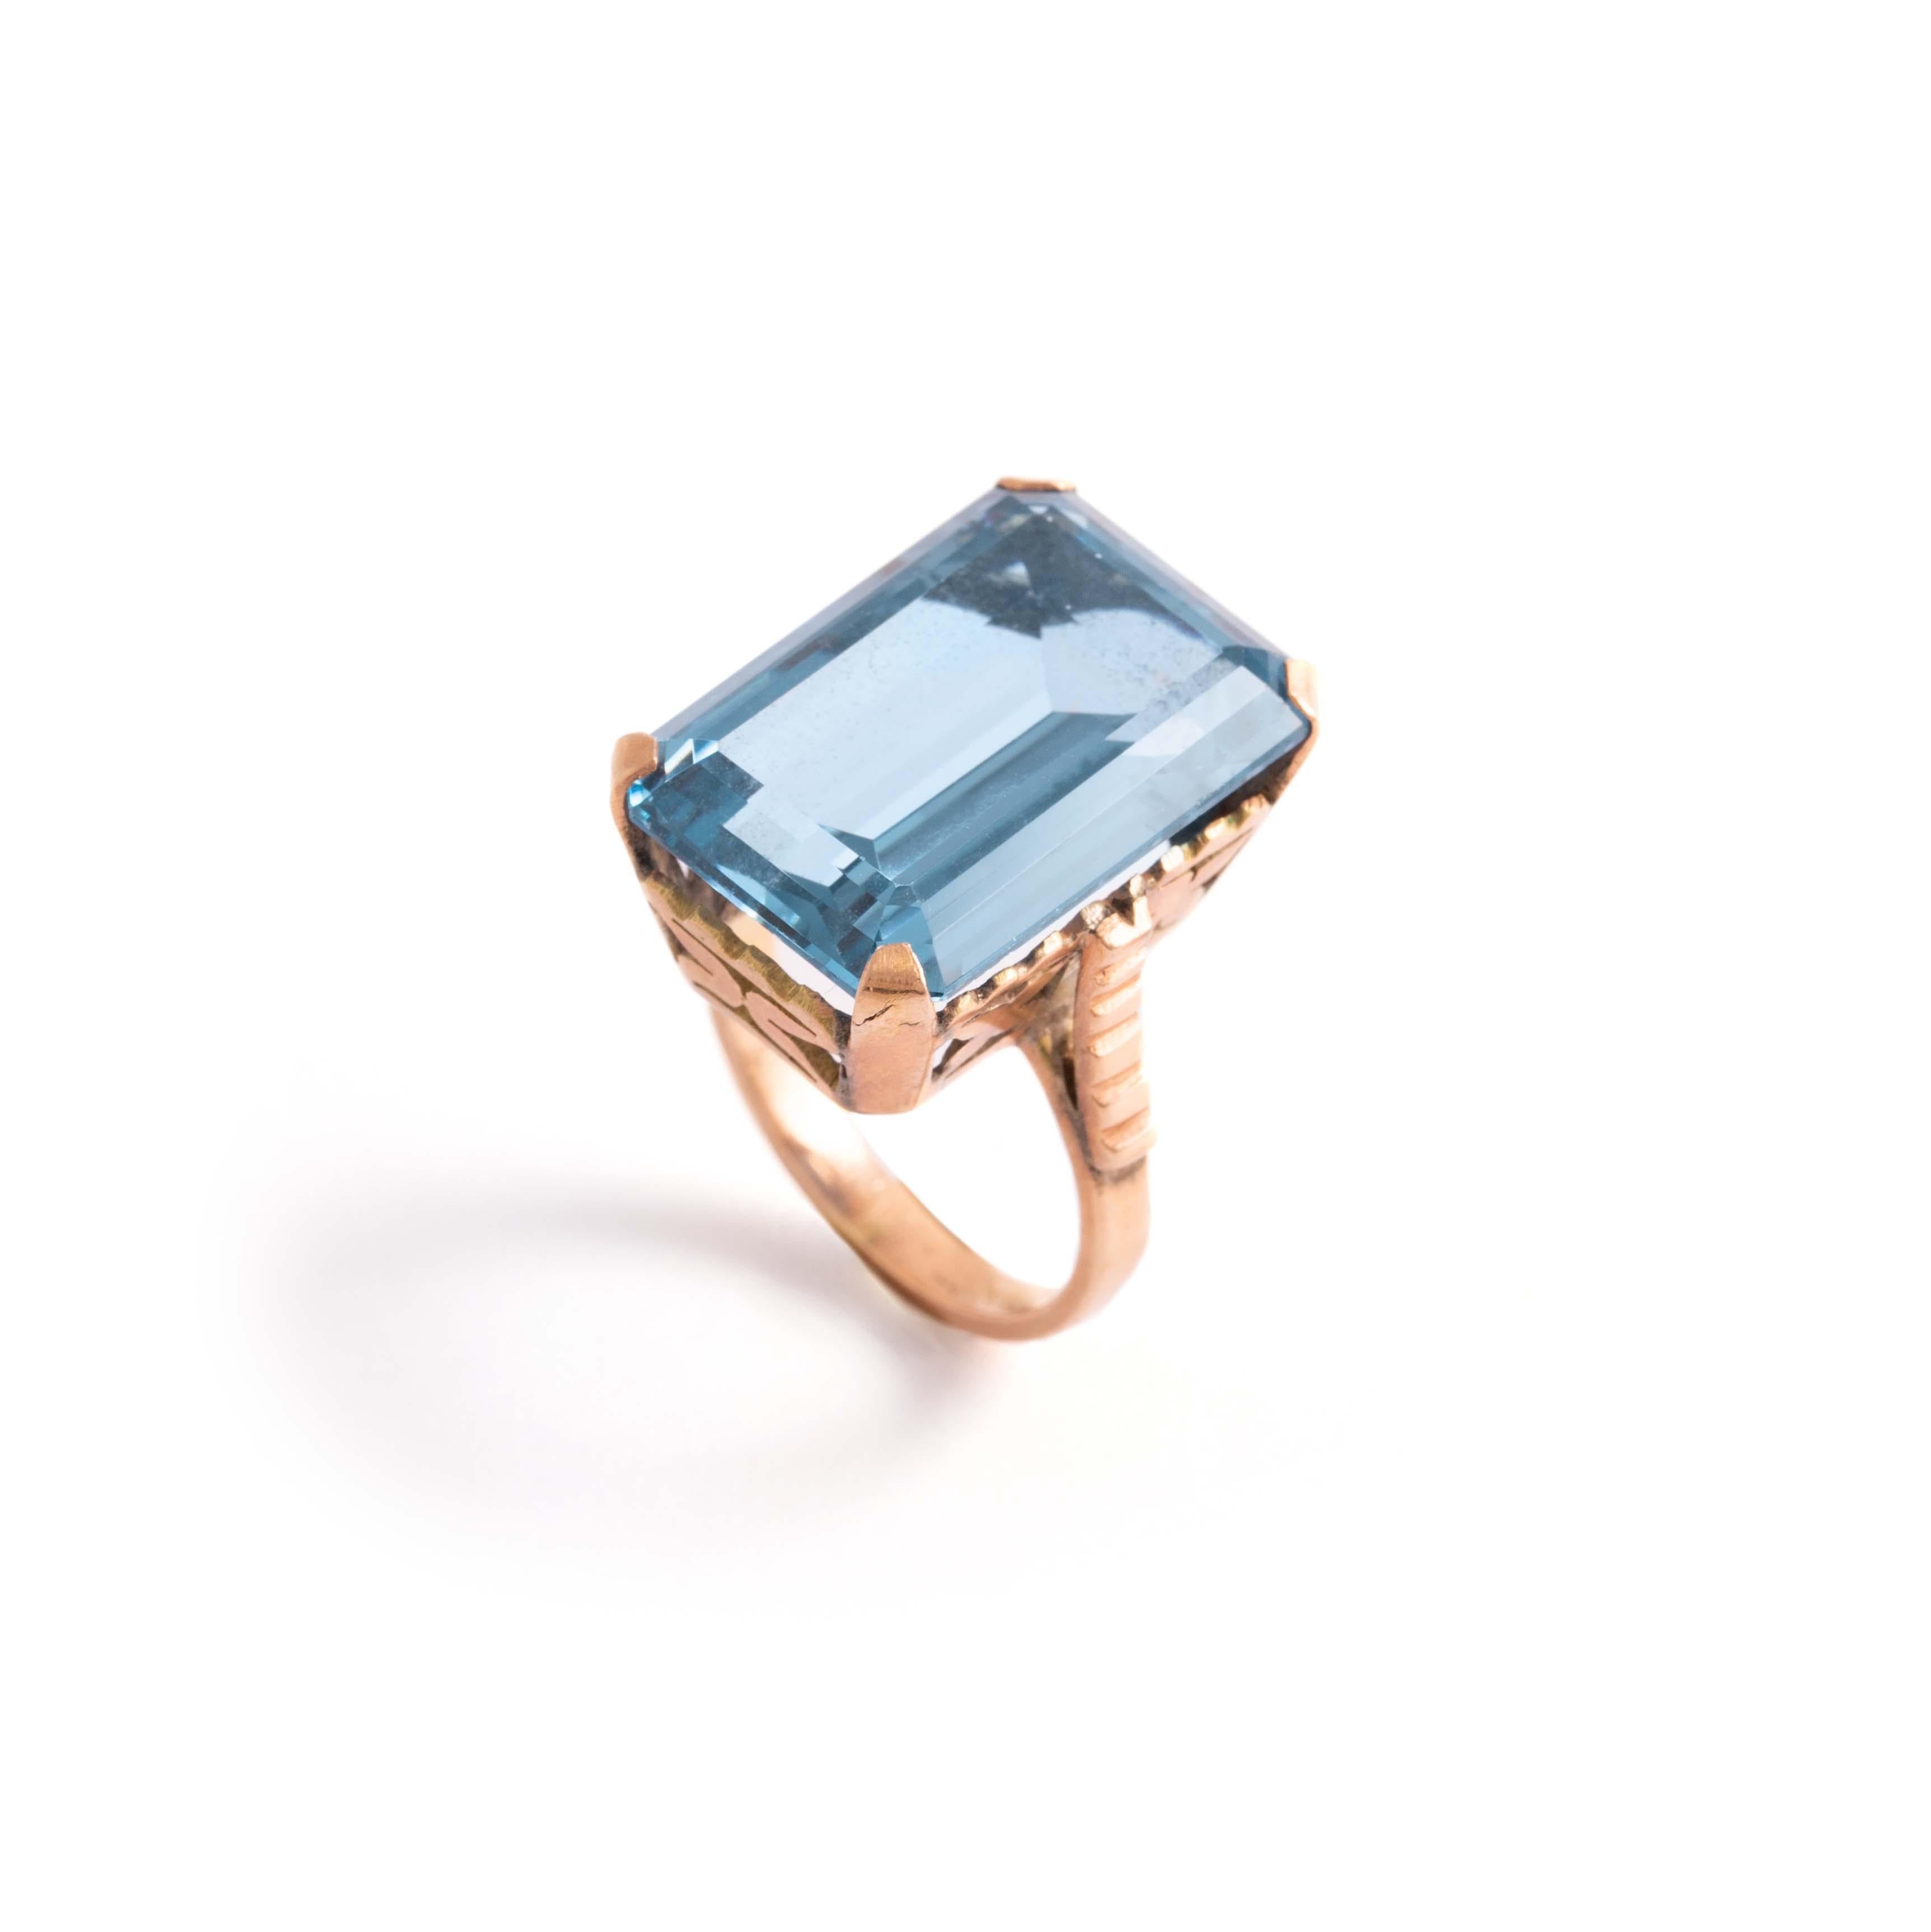 Ring aus 14 Karat Gold mit einem blauen Stein im Smaragdschliff in der Mitte.
Abmessungen des Steins: 20,46 x 14,20 x 8,06 mm. 
Bruttogewicht: 10,11 Gramm.